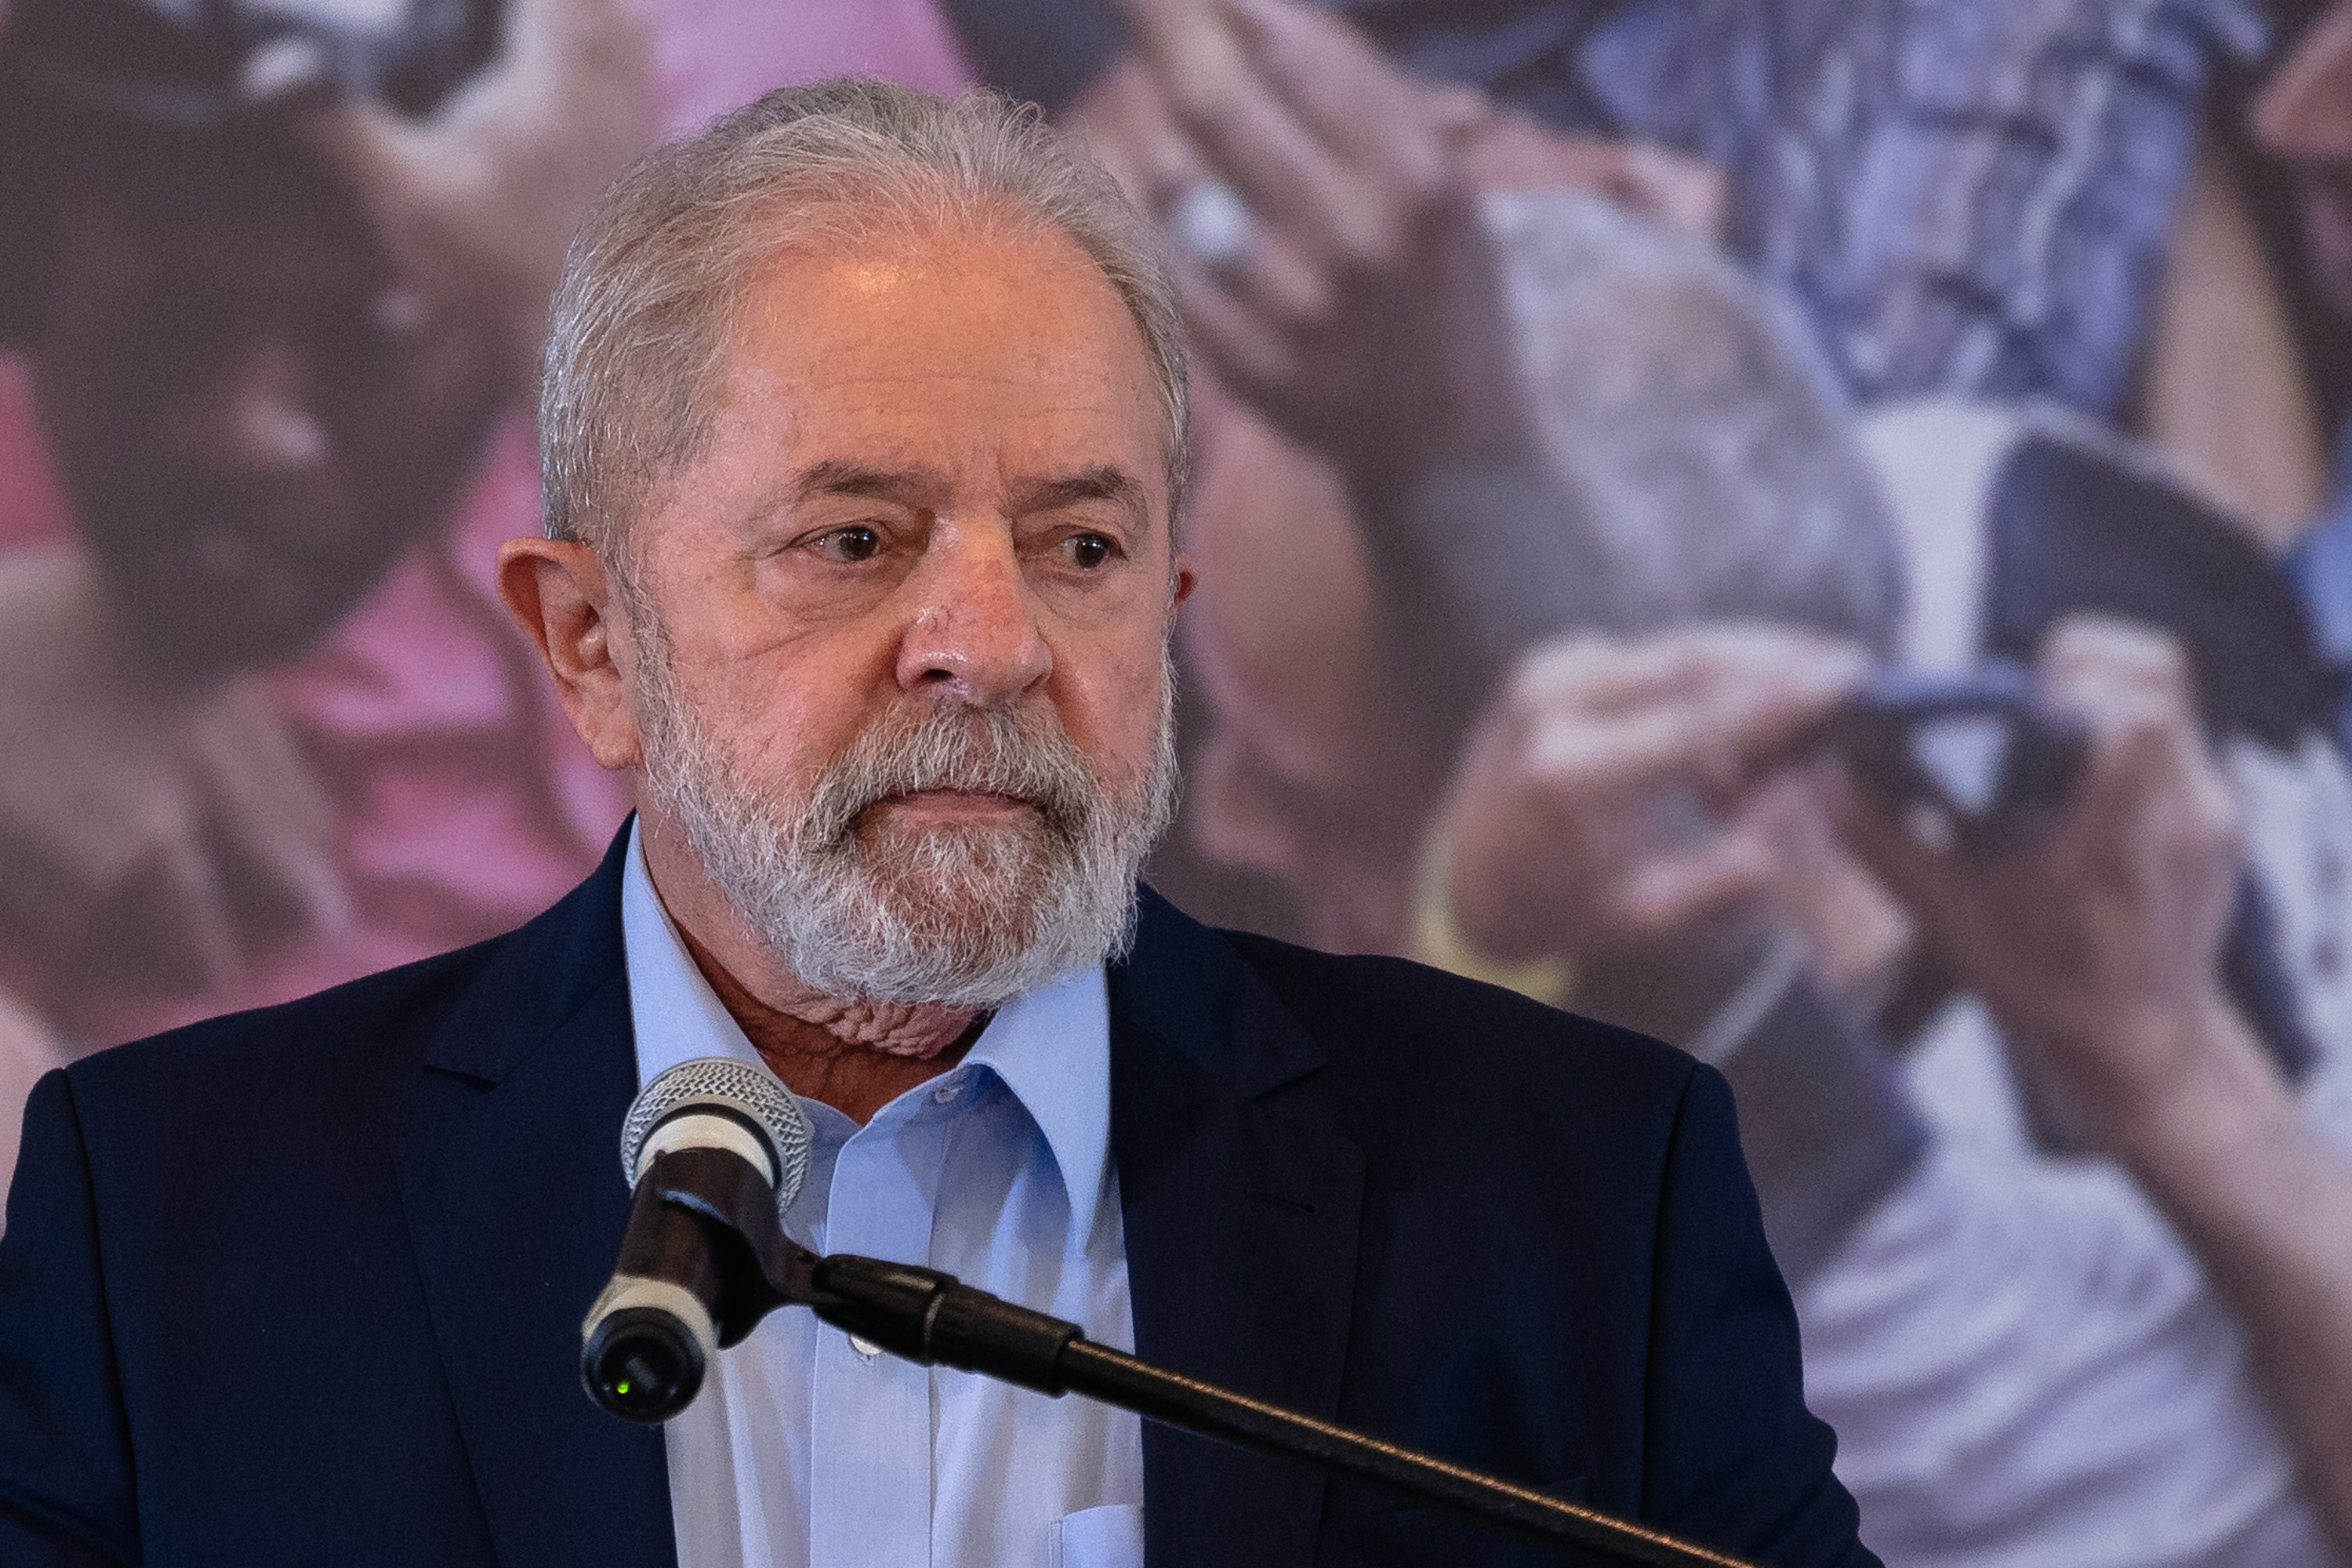 Caso ocorreu em 1998. Lula afirmou que sequestradores presos estavam em greve de fome e poderiam morrer na prisão, então decidiu interceder junto a Fernando Henrique Cardoso